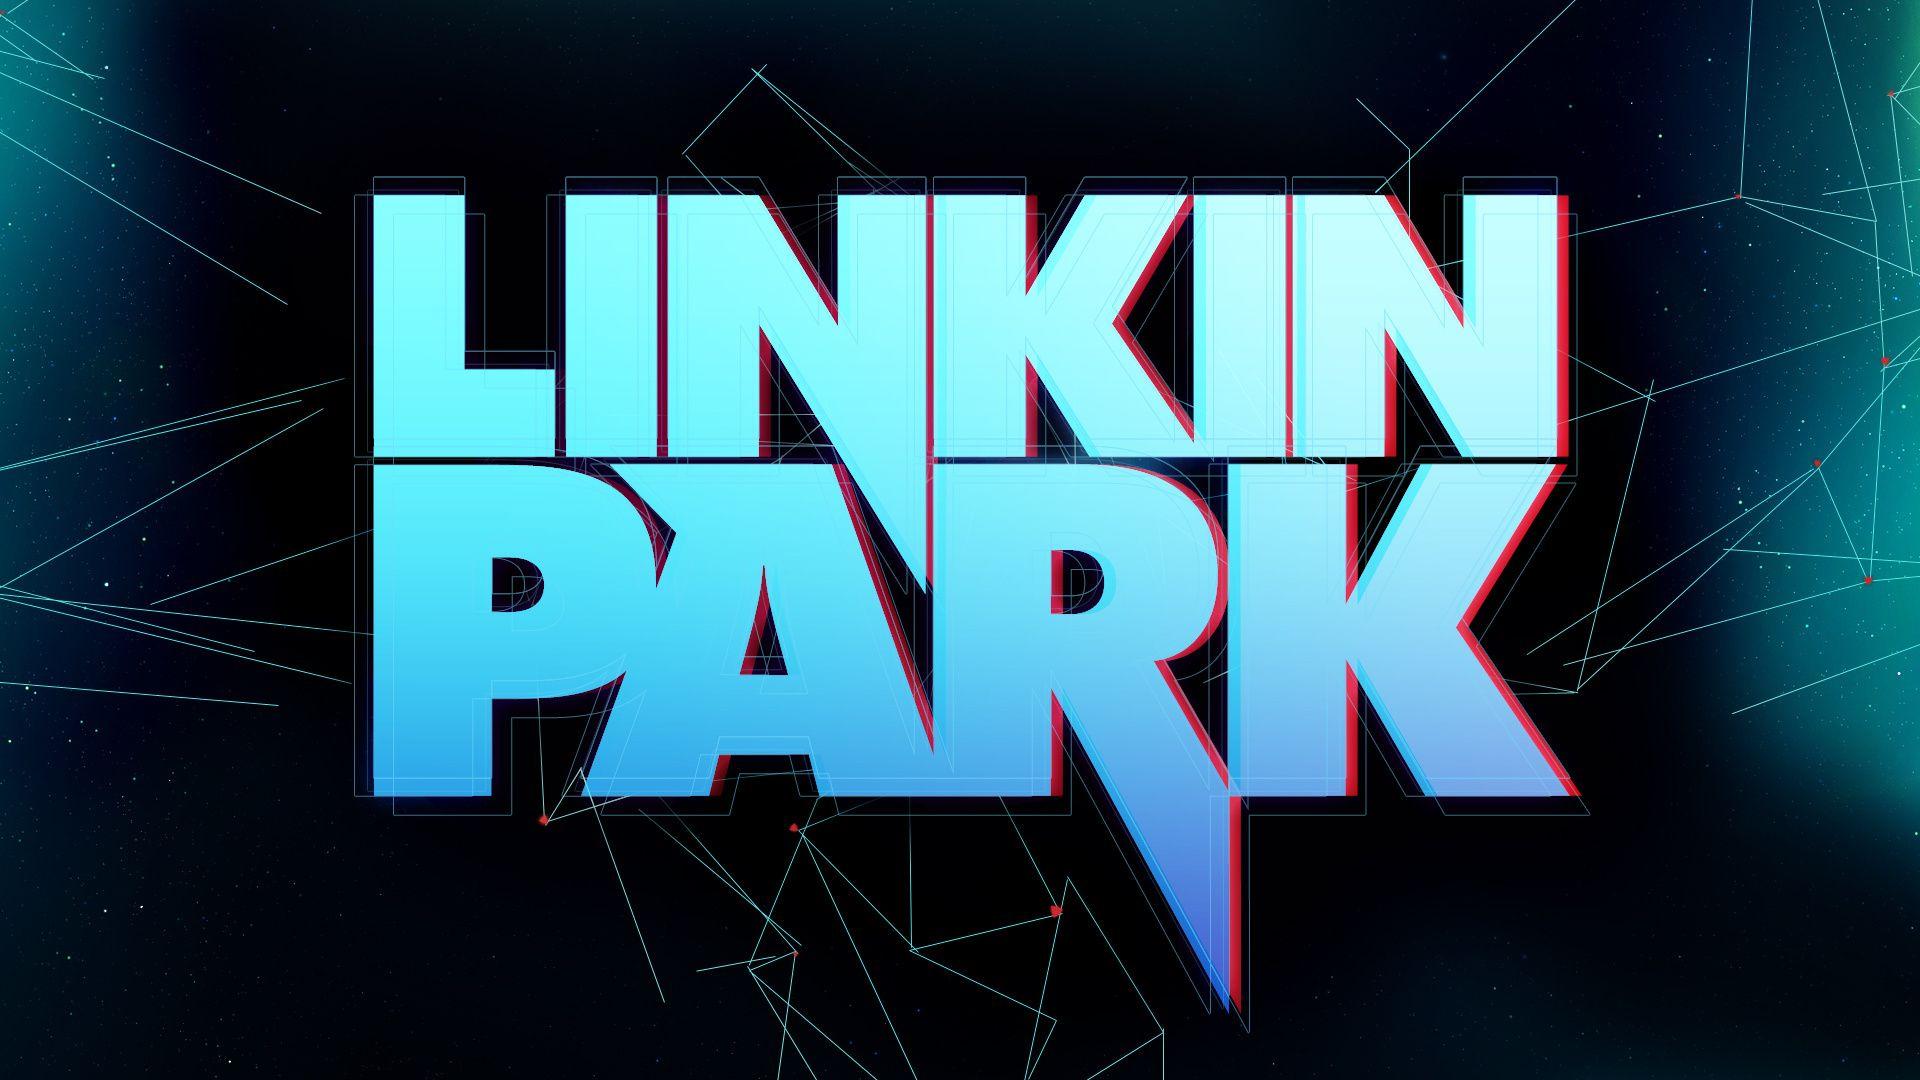 Linkin Park Wallpaper 12846 1920x1080 px